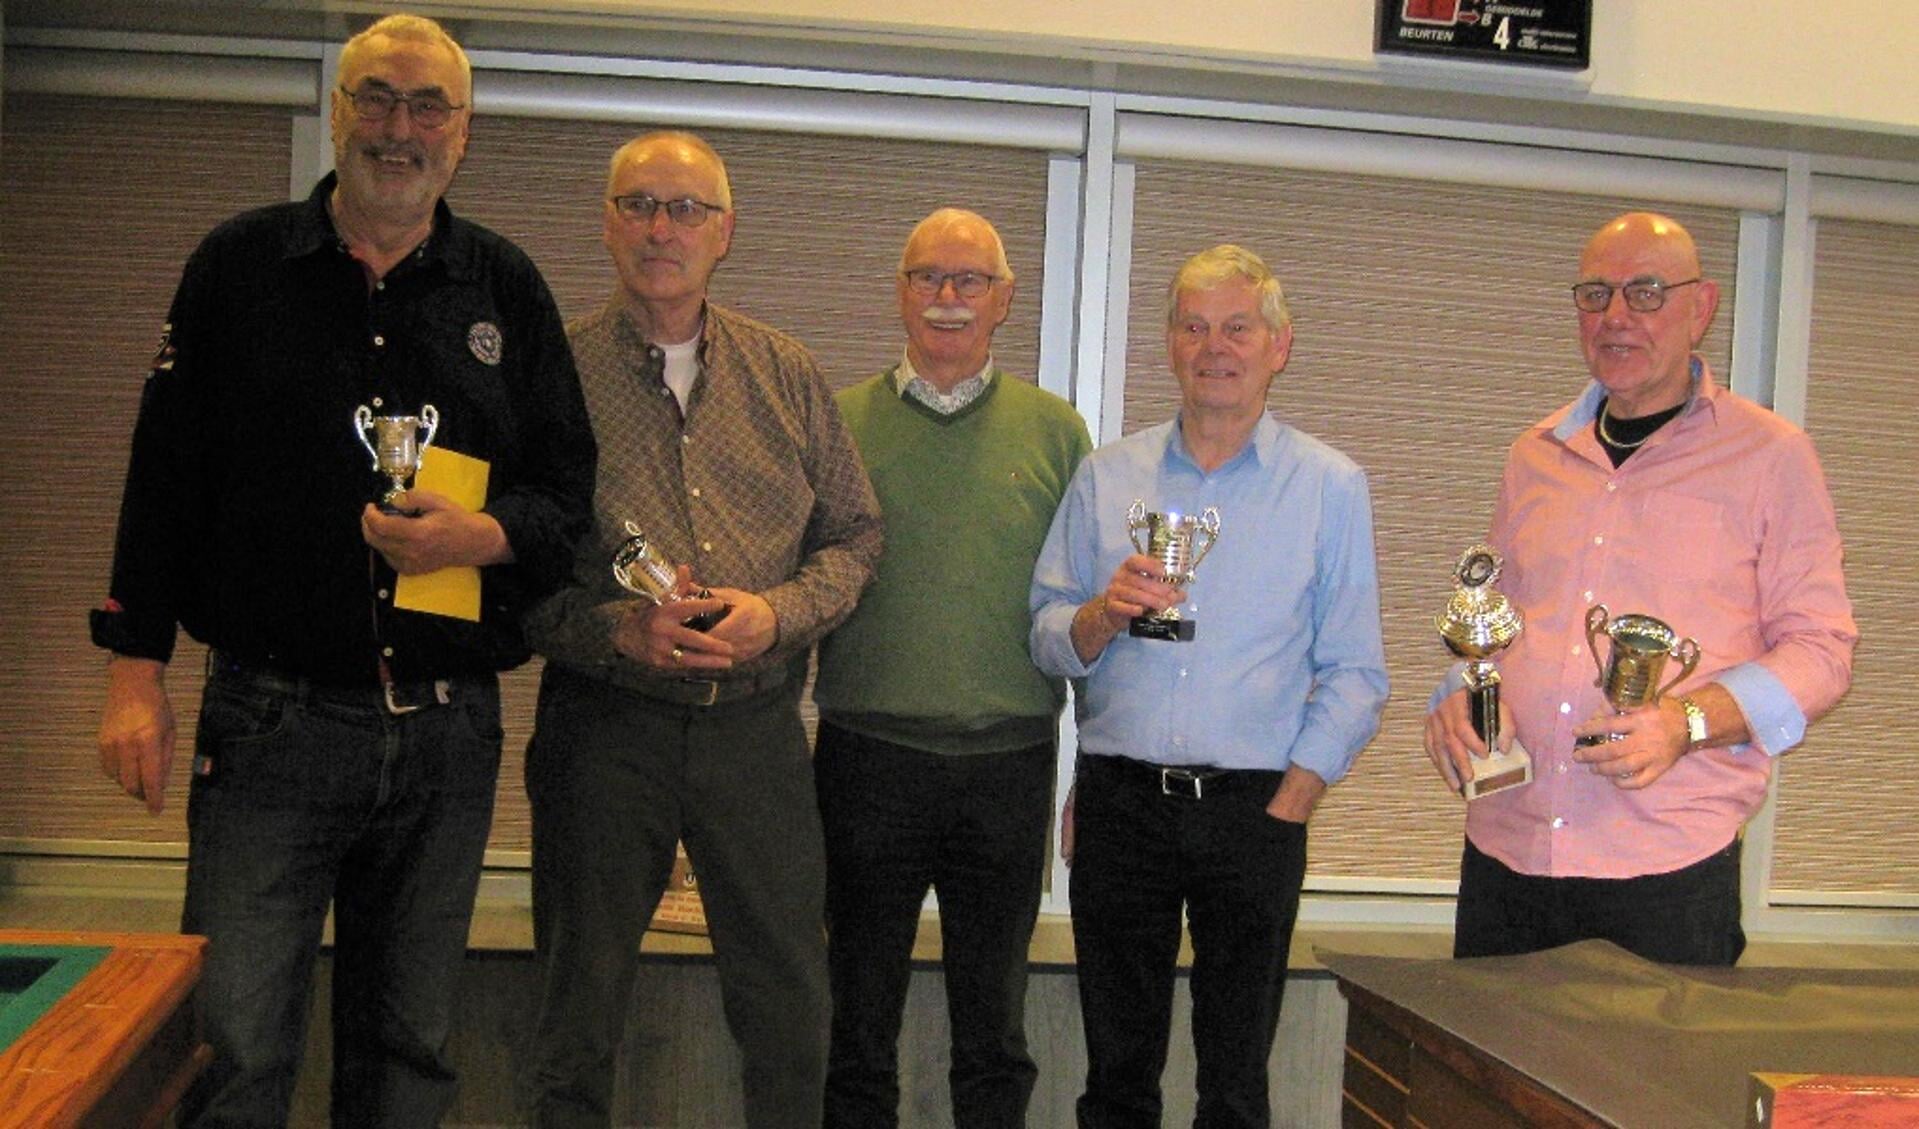 Vlnr: Jan vd Wiele 4e, Bep Knopper 3e, Henk Konijn 2e en Ton de Boer 1e. Hij ontving tevens de wisselbeker. In het midden: Henk Pirovano, voorzitter.